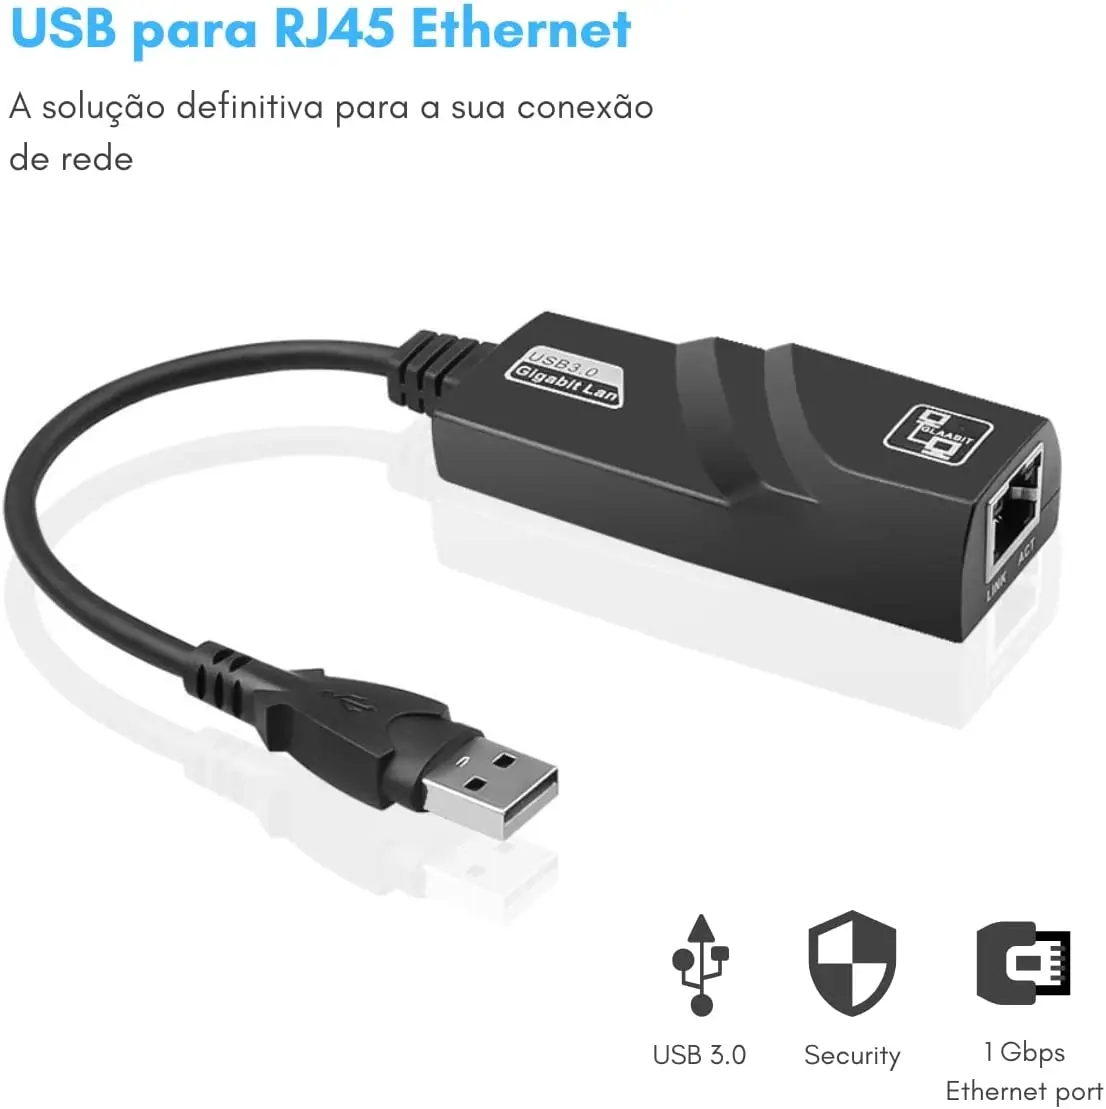 

New Adaptador de Rede Conversor USB 3.0 para RJ45 10/100/1000 Gigabit Ethernet 1000mpbs